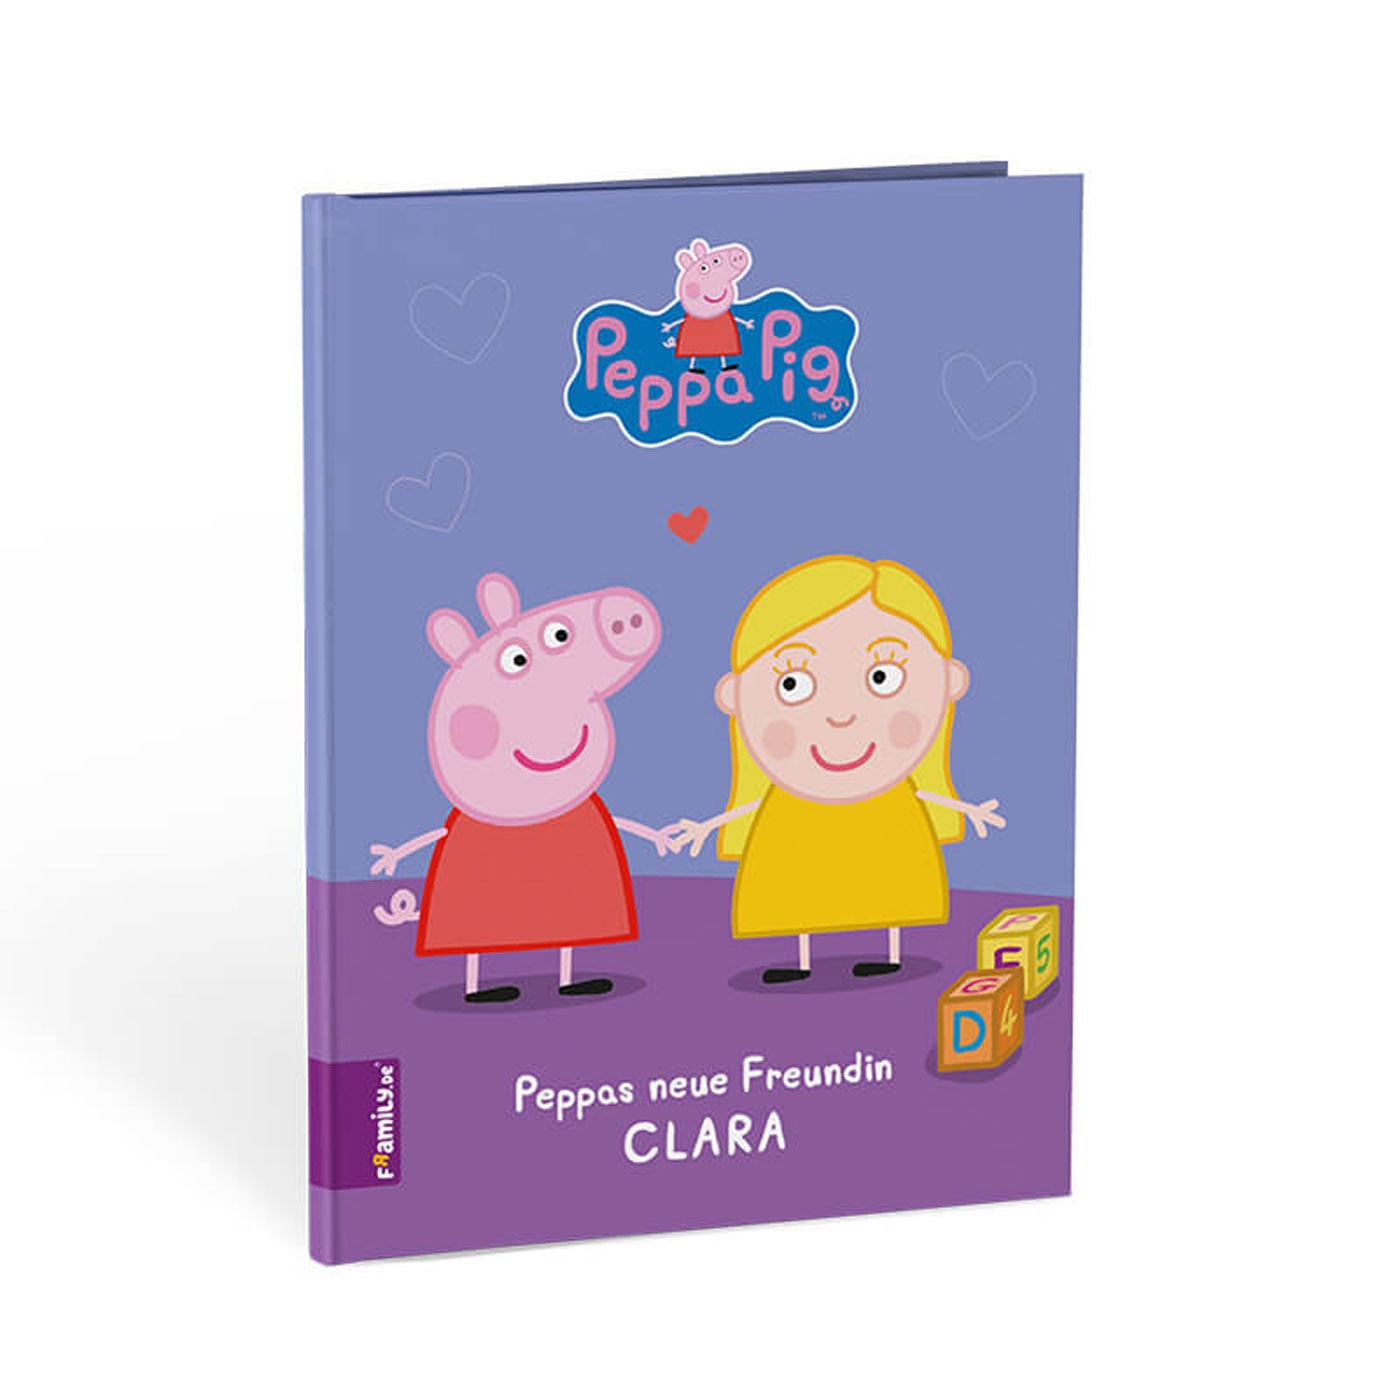 Geschenke-Tipp Für Kinder: Peppa Pig Kinderbuch Personalisieren // Himbeer